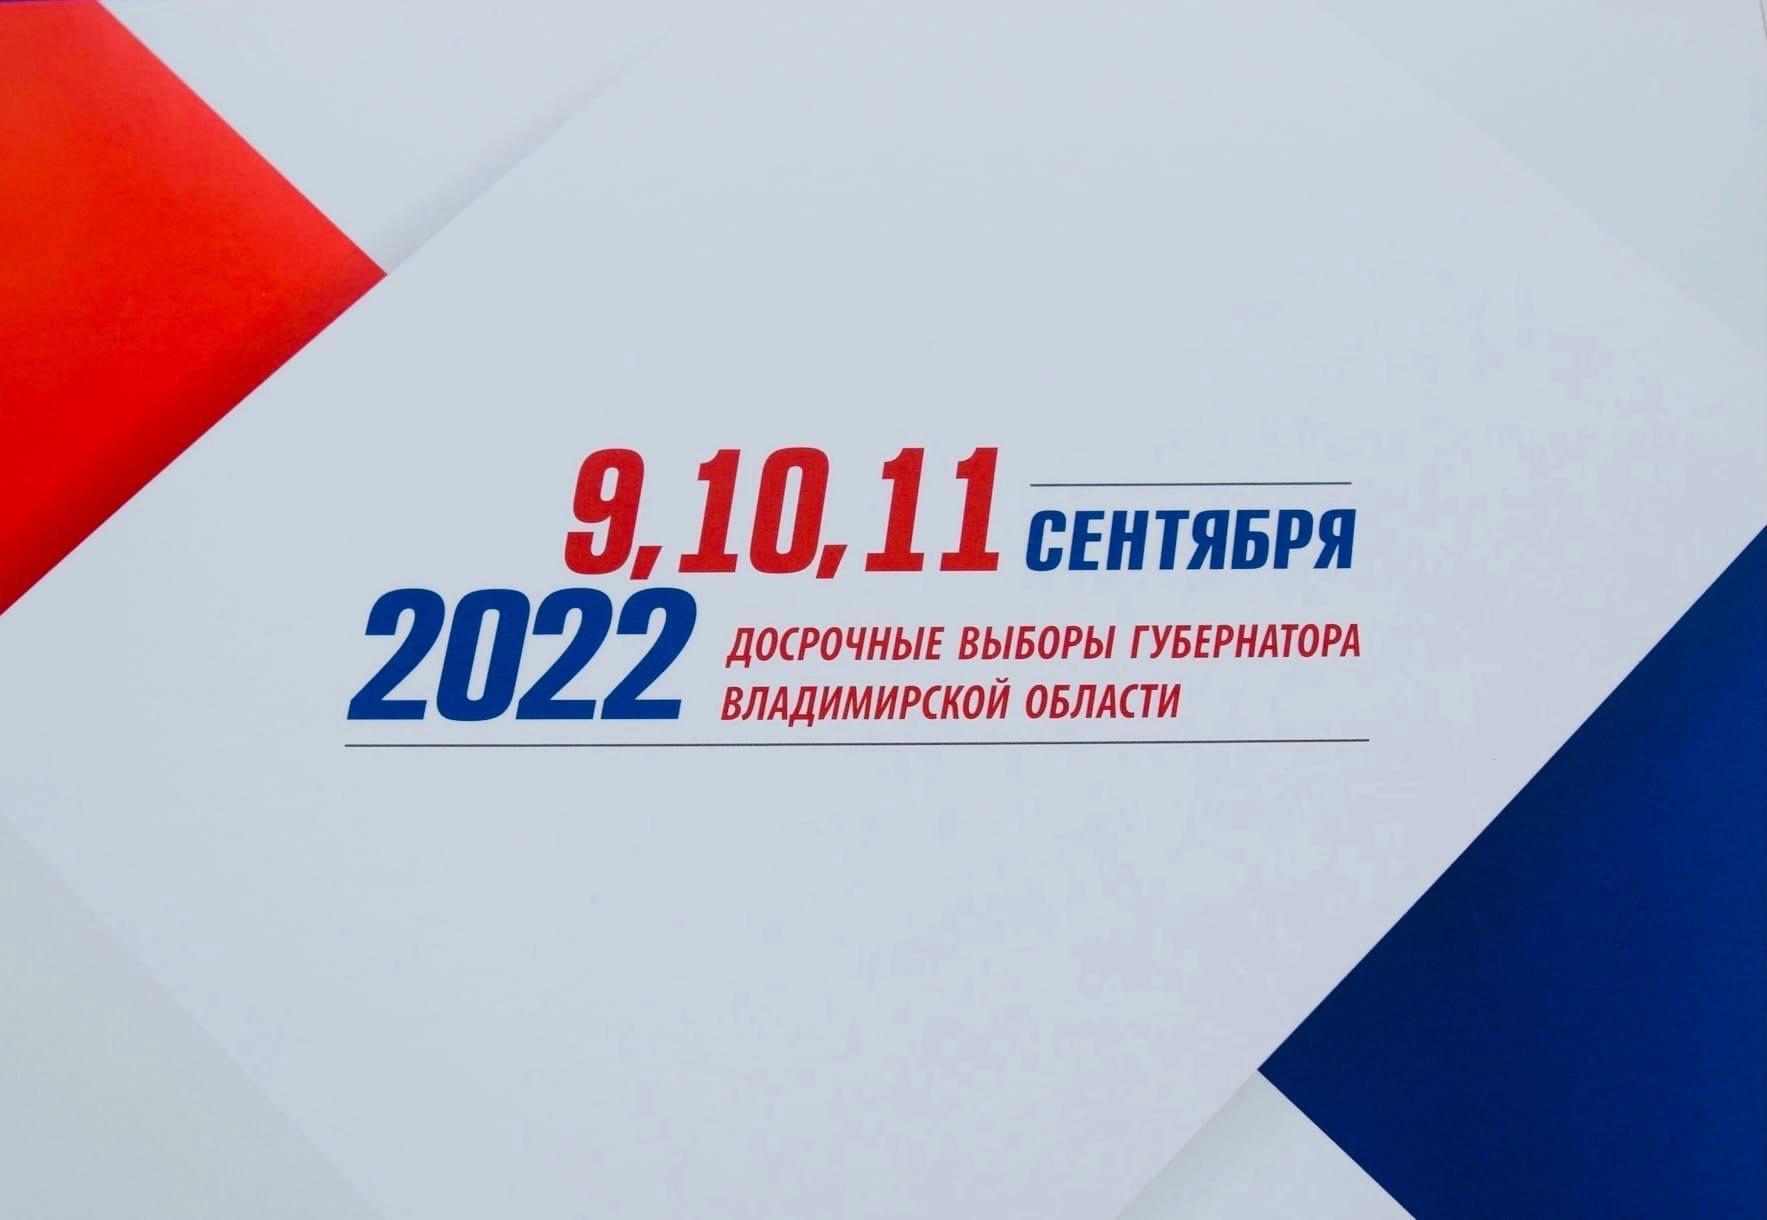 9-11 сентября 2022 года состоятся досрочные выборы главы нашего региона.